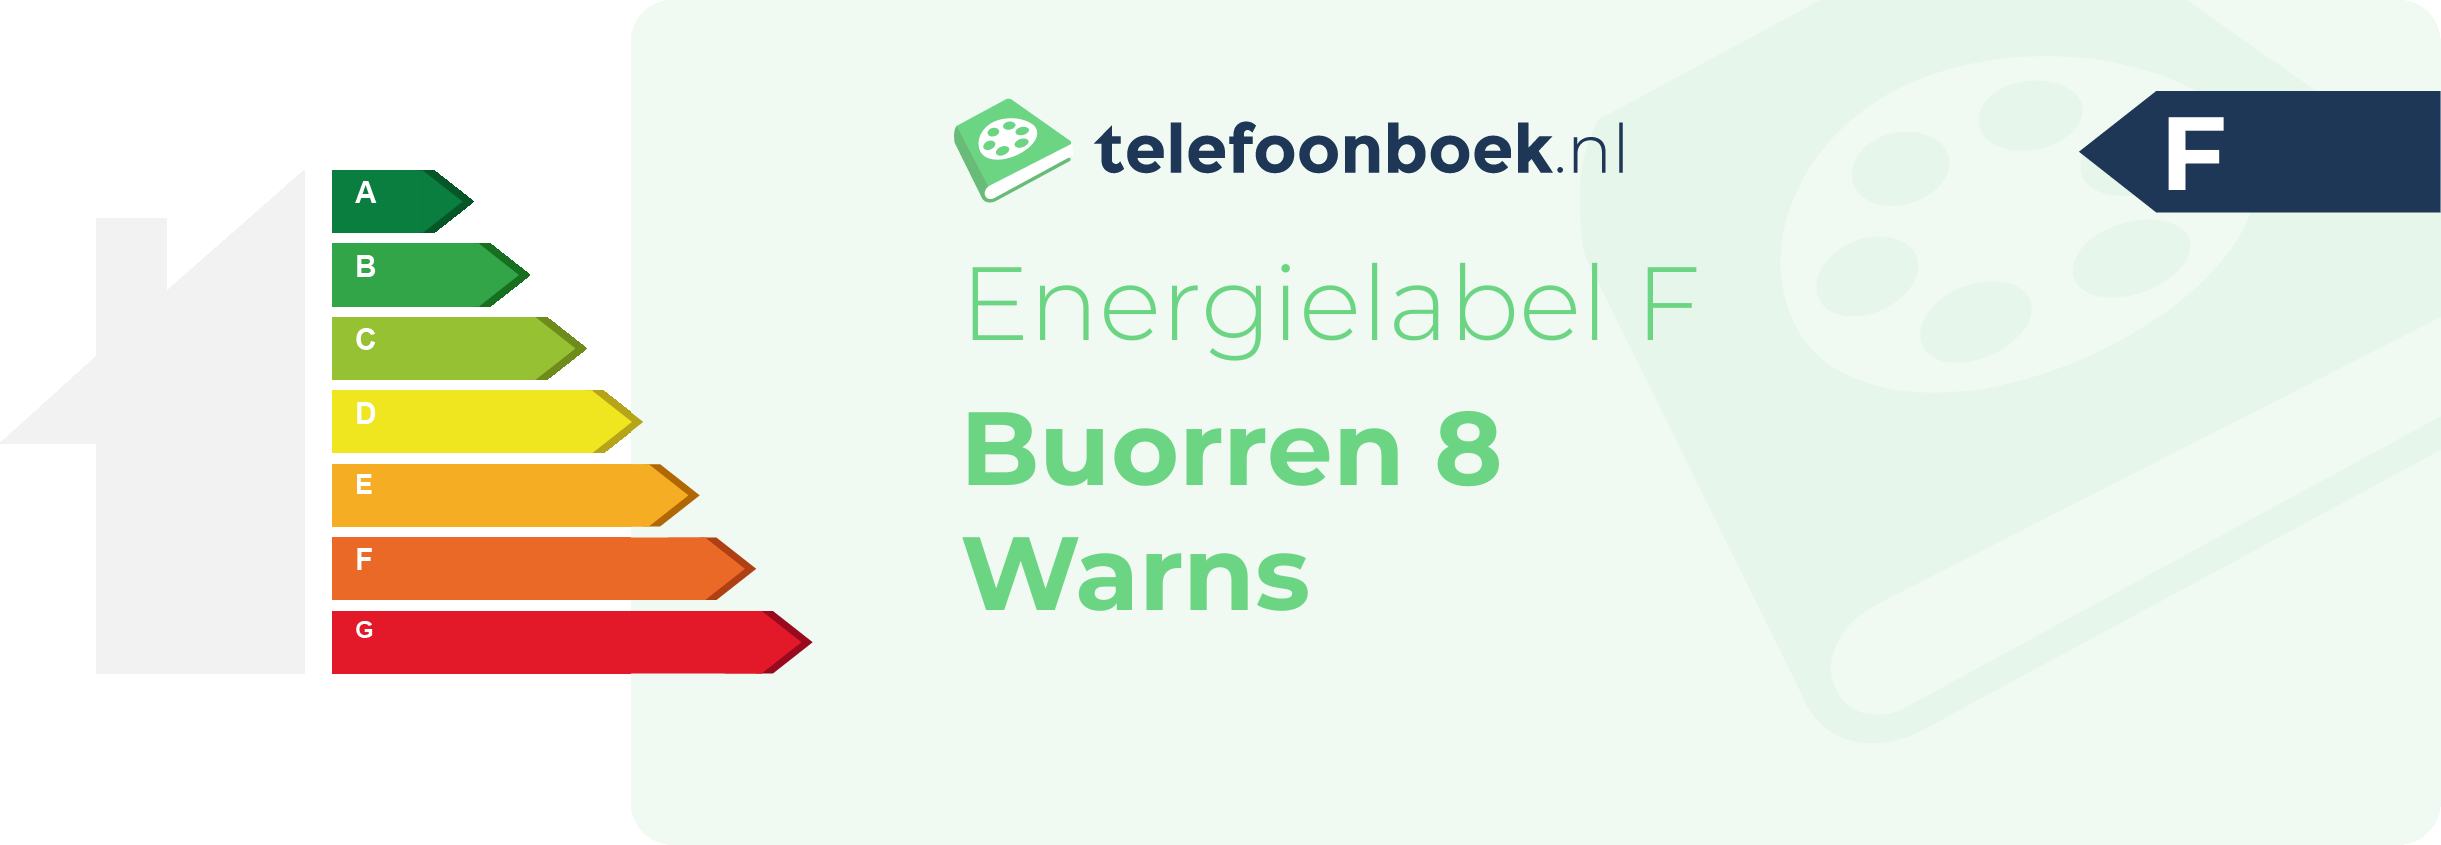 Energielabel Buorren 8 Warns